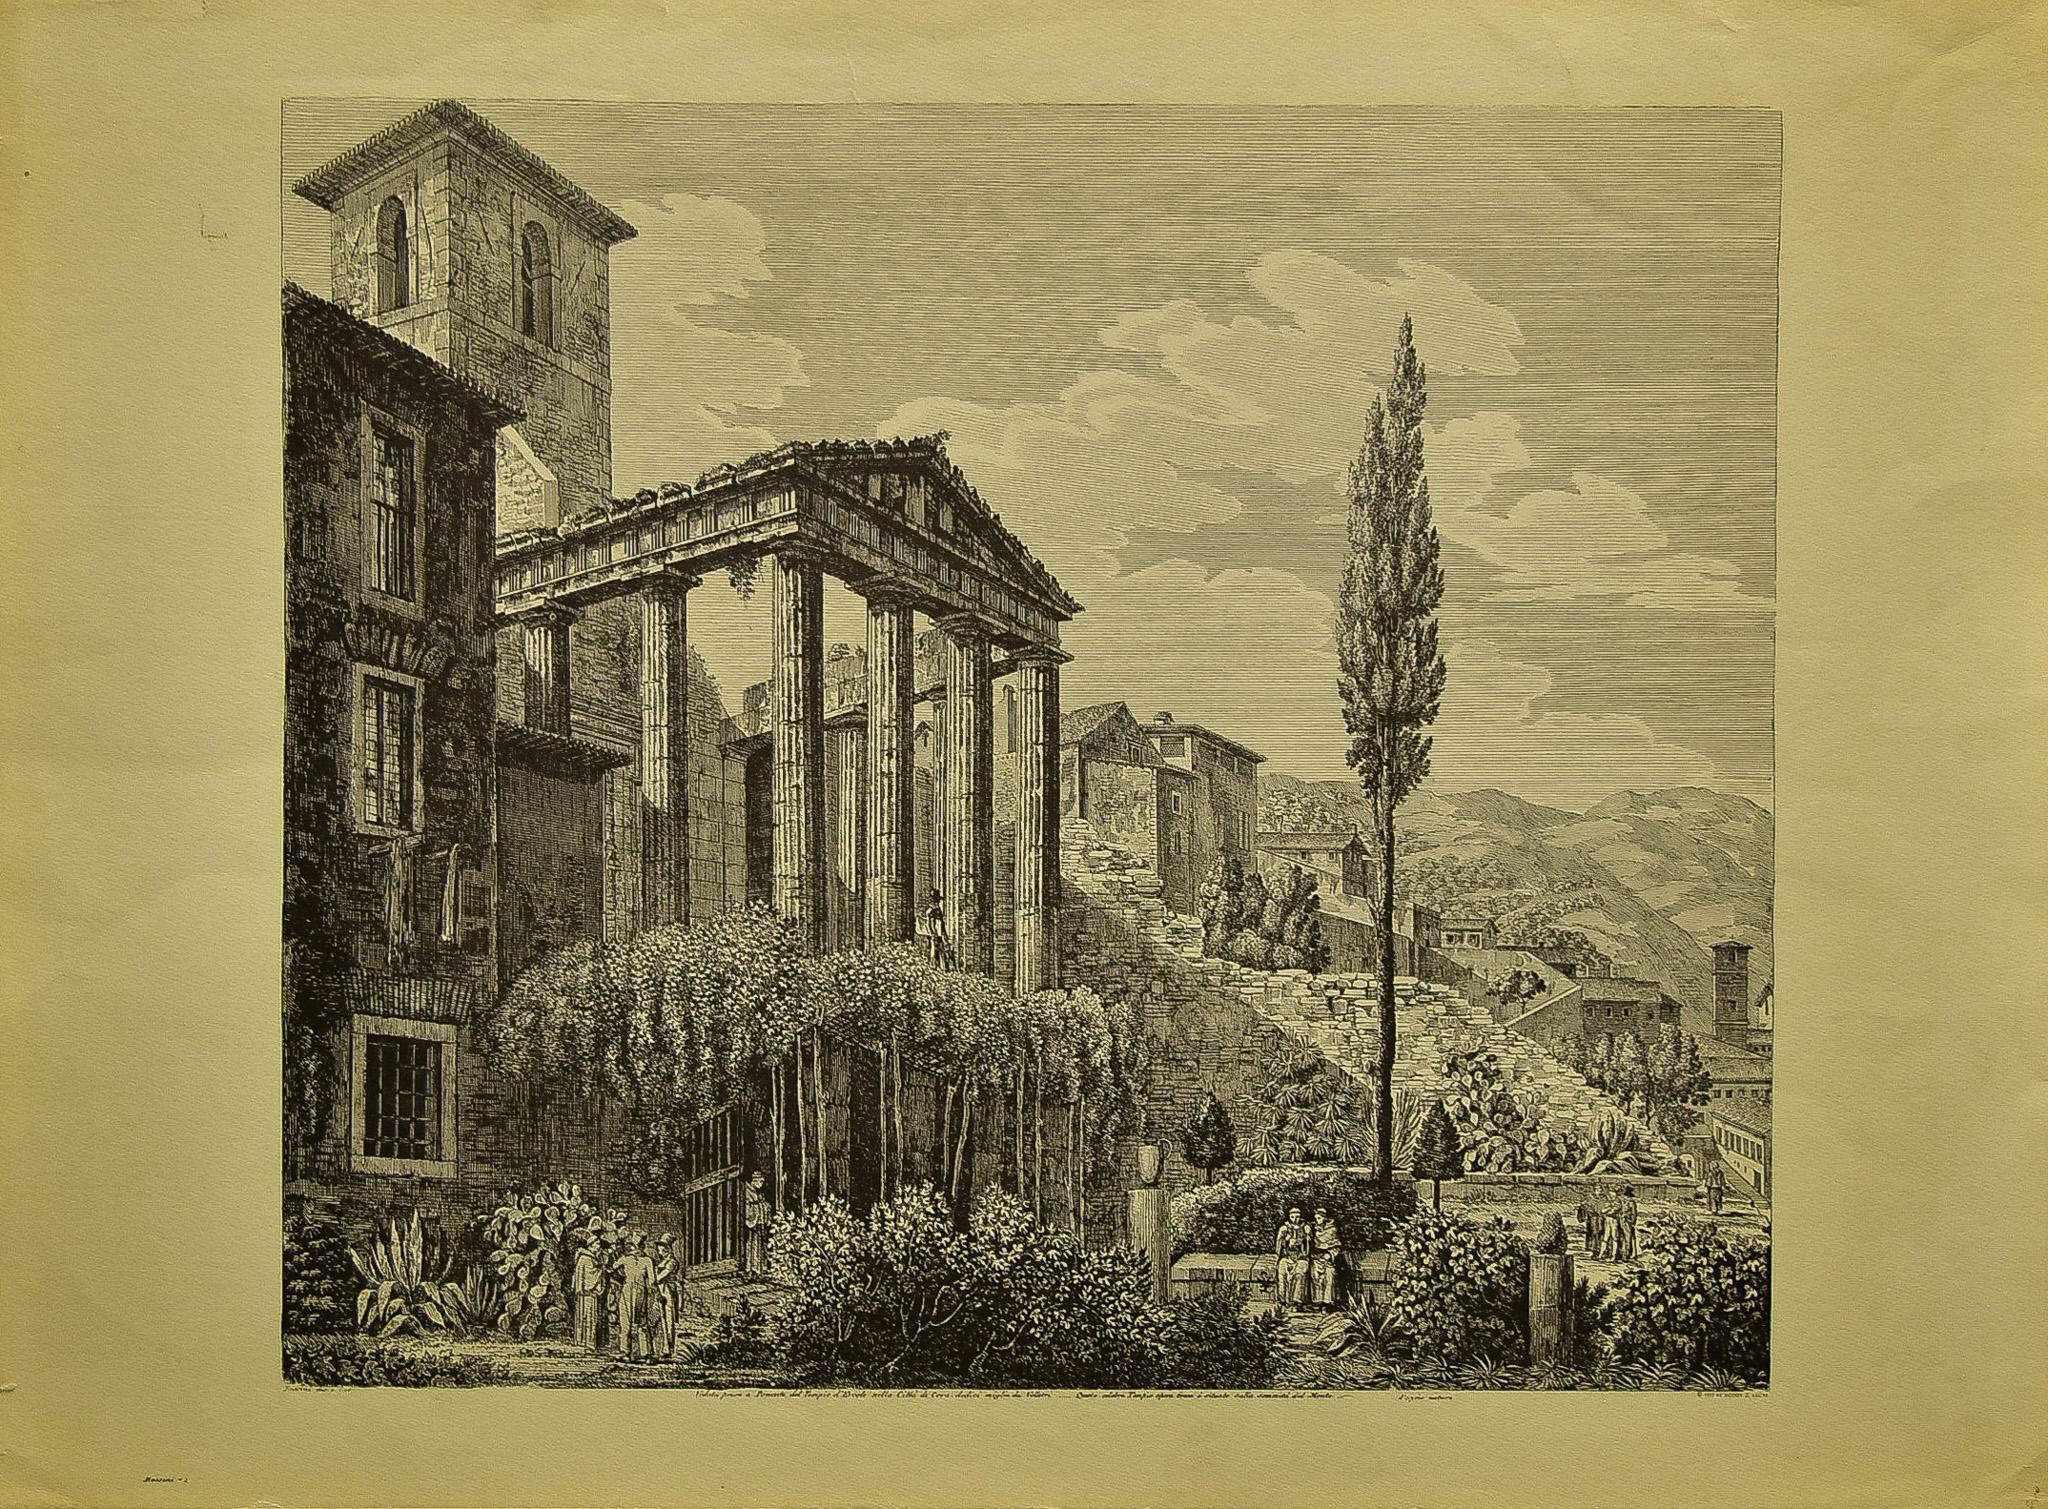 Luigi Rossini Landscape Print - "Veduta da Ponente del Tempio di Ercole", Lithographic Etching, Printed in 1957.